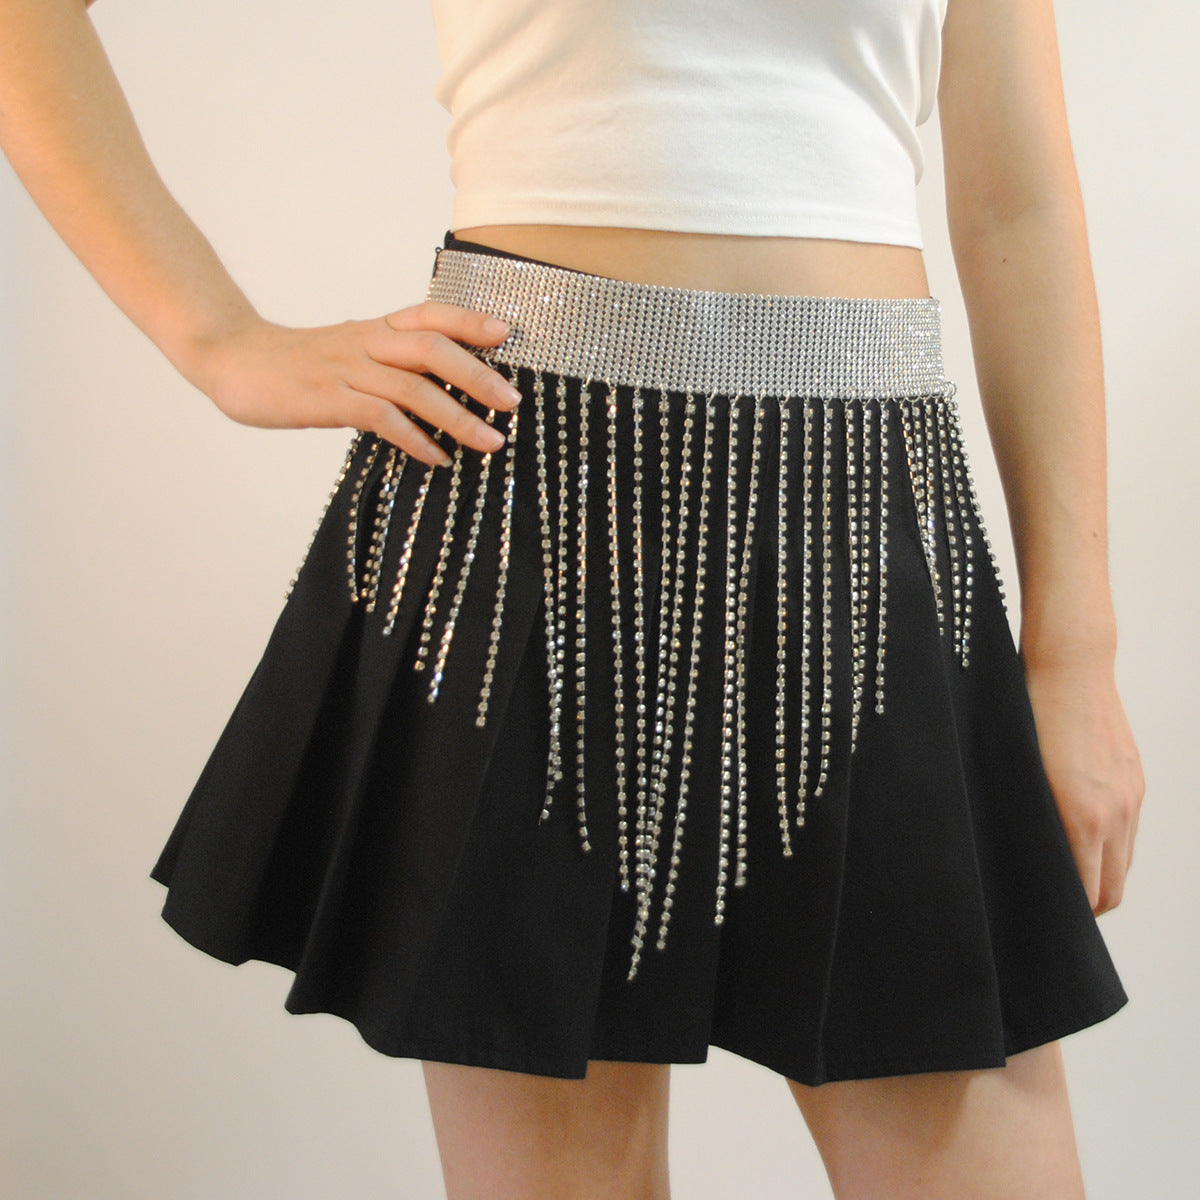 Metal Rhinestone Fringe Stitching Skirt Waist Chain